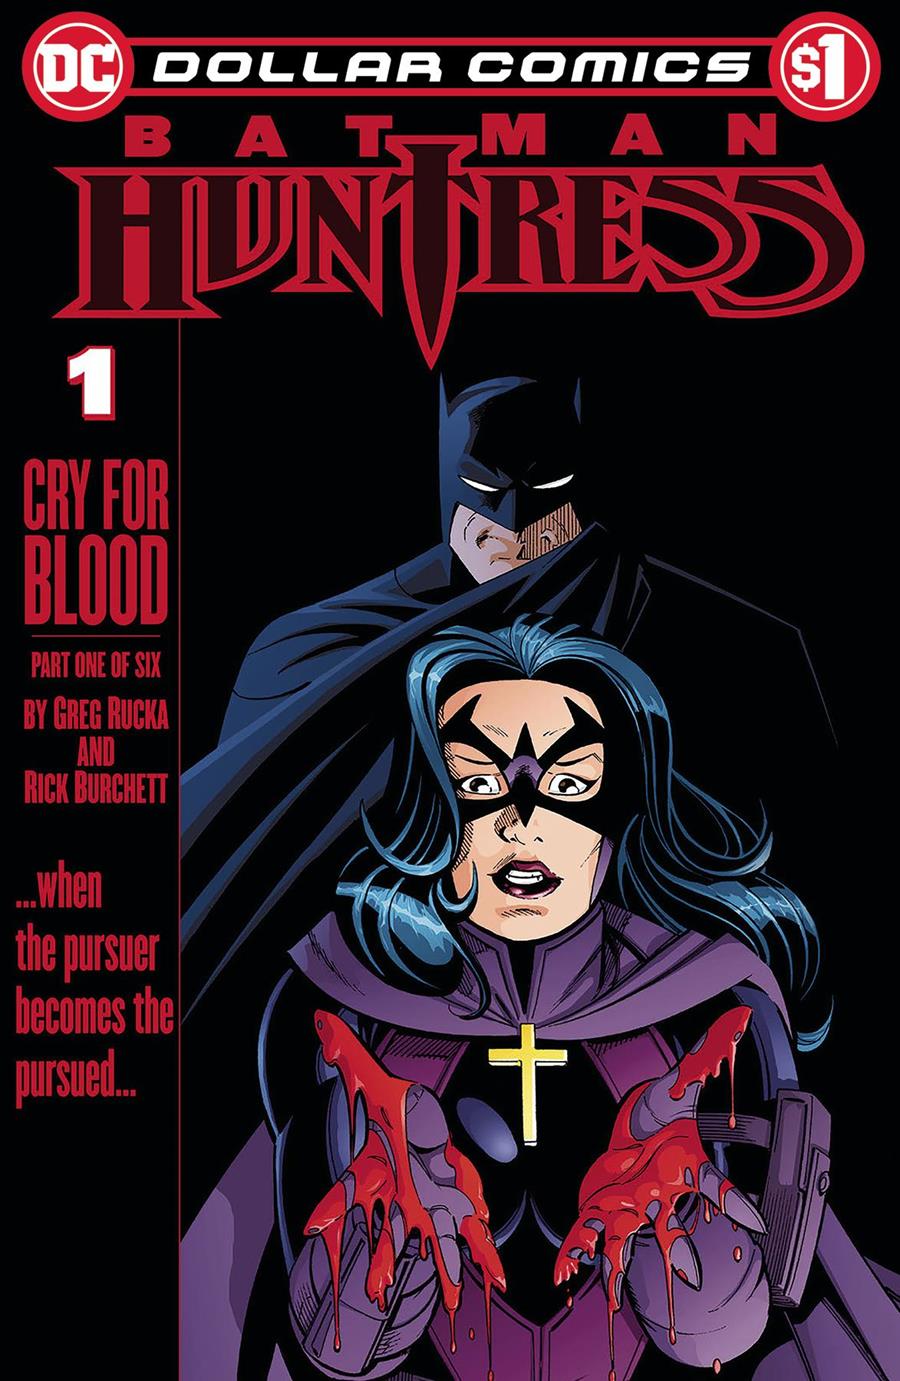 DOLLAR COMICS BATMAN HUNTRESS CRY FOR BLOOD #1 | NOV190519 | Terra de Còmic - Tu tienda de cómics online especializada en cómics, manga y merchandising